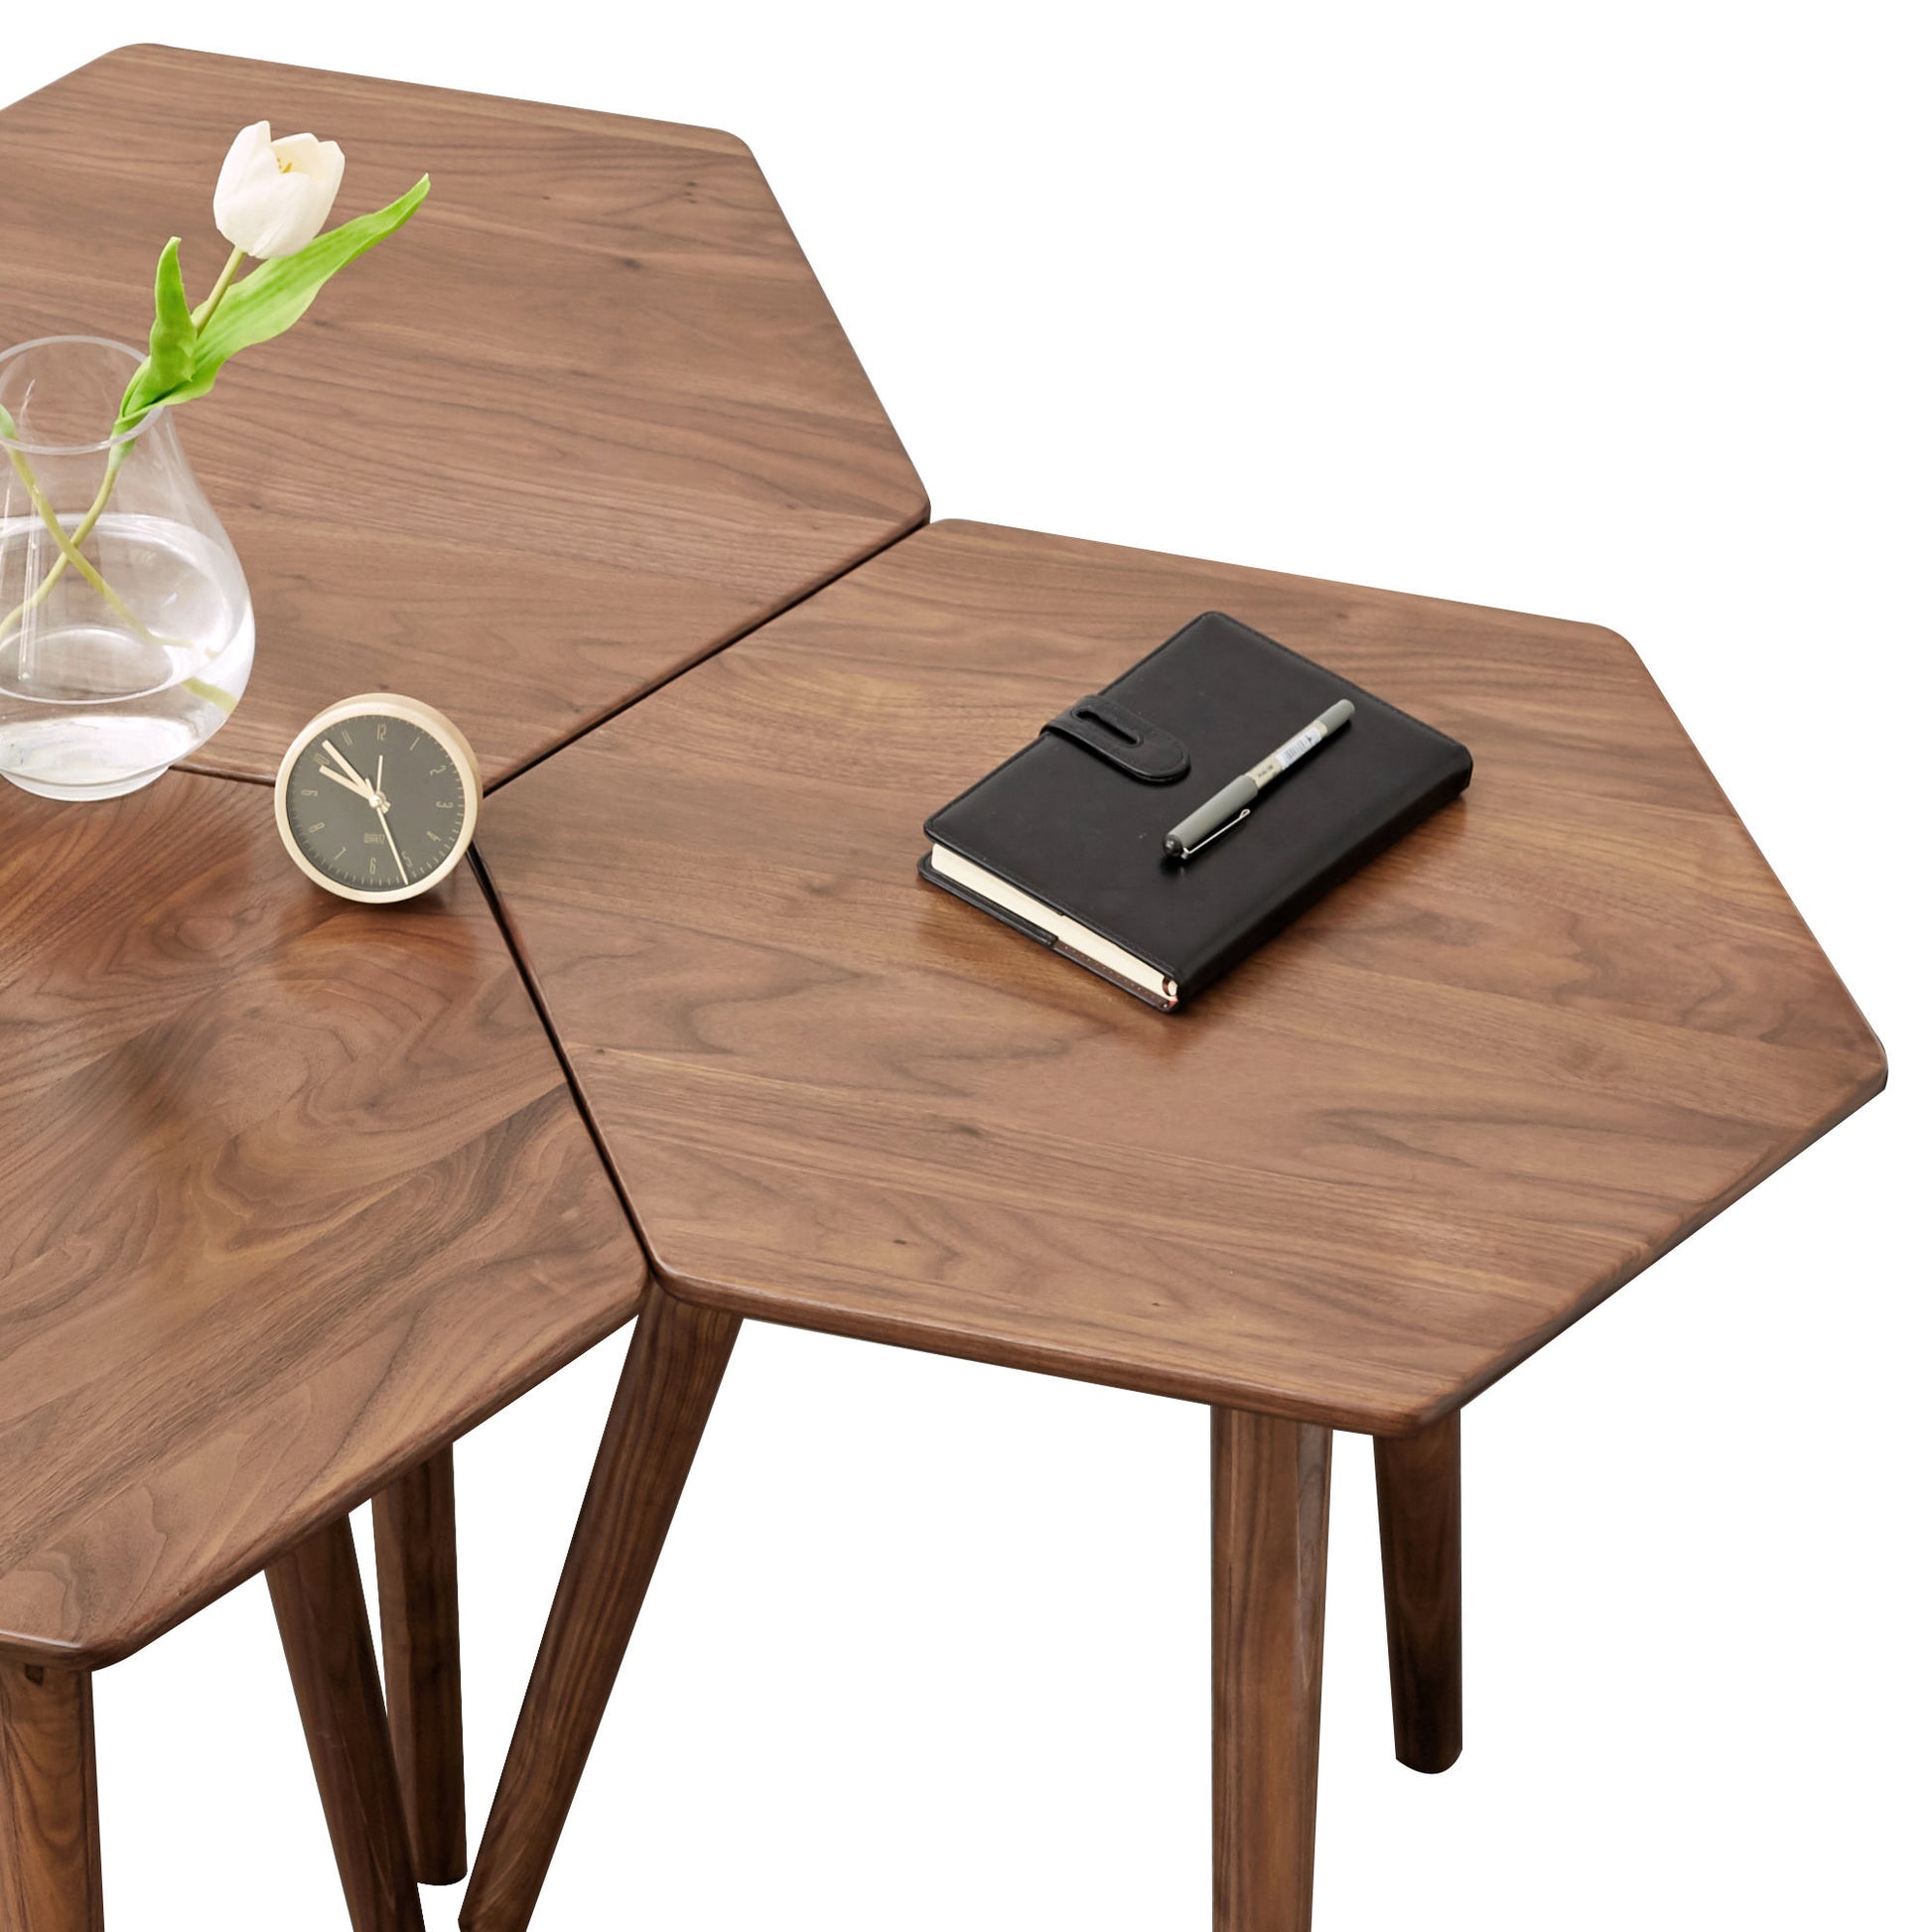 اشتري الان طاولة جانبية خشبي بني عصرية اونلاين | بيوت